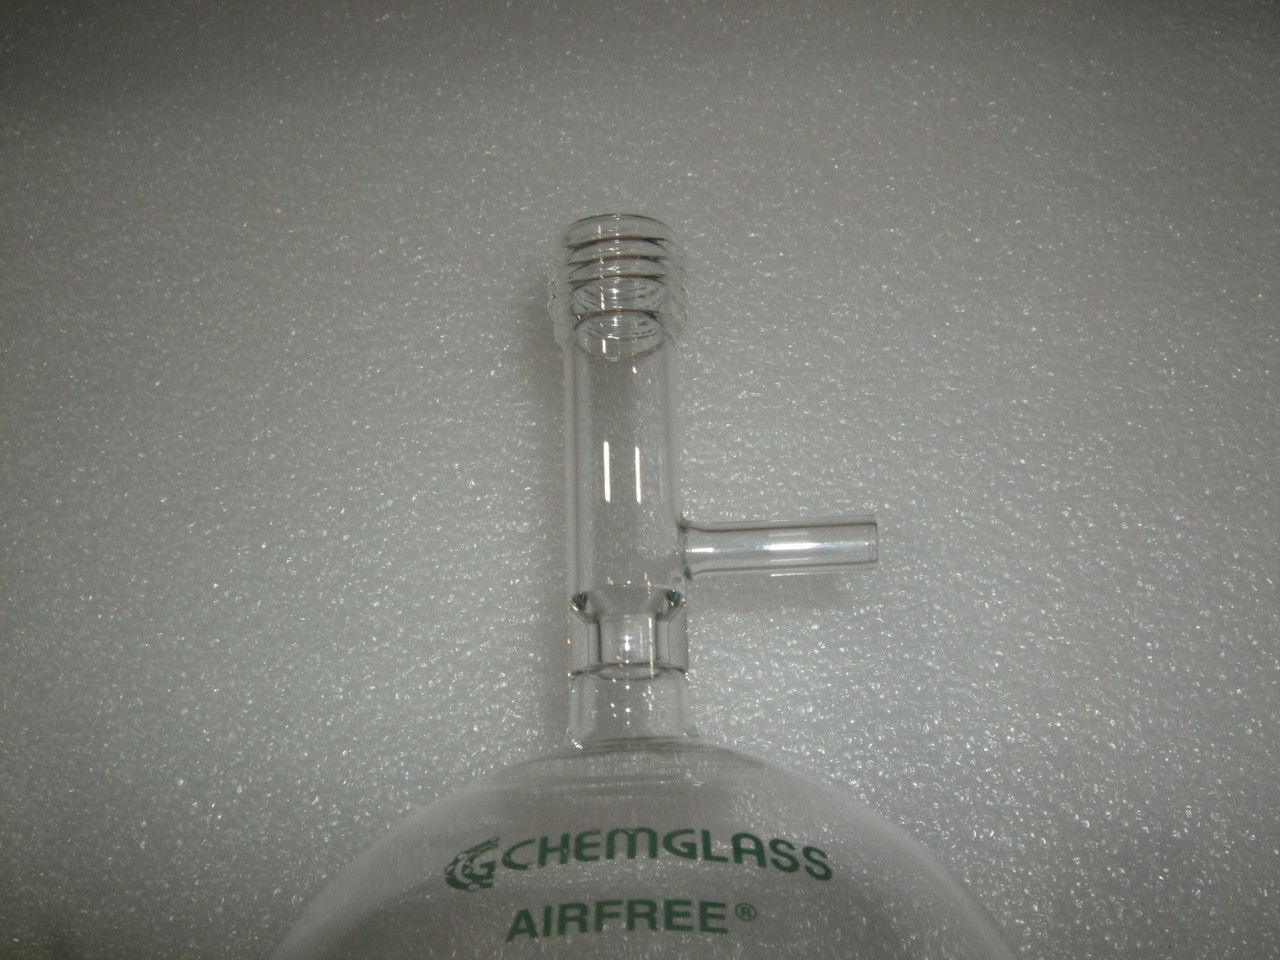 Chemglass AF-0094-05 1000mL Storage Flask, Cajon, Airfree, Schlenk